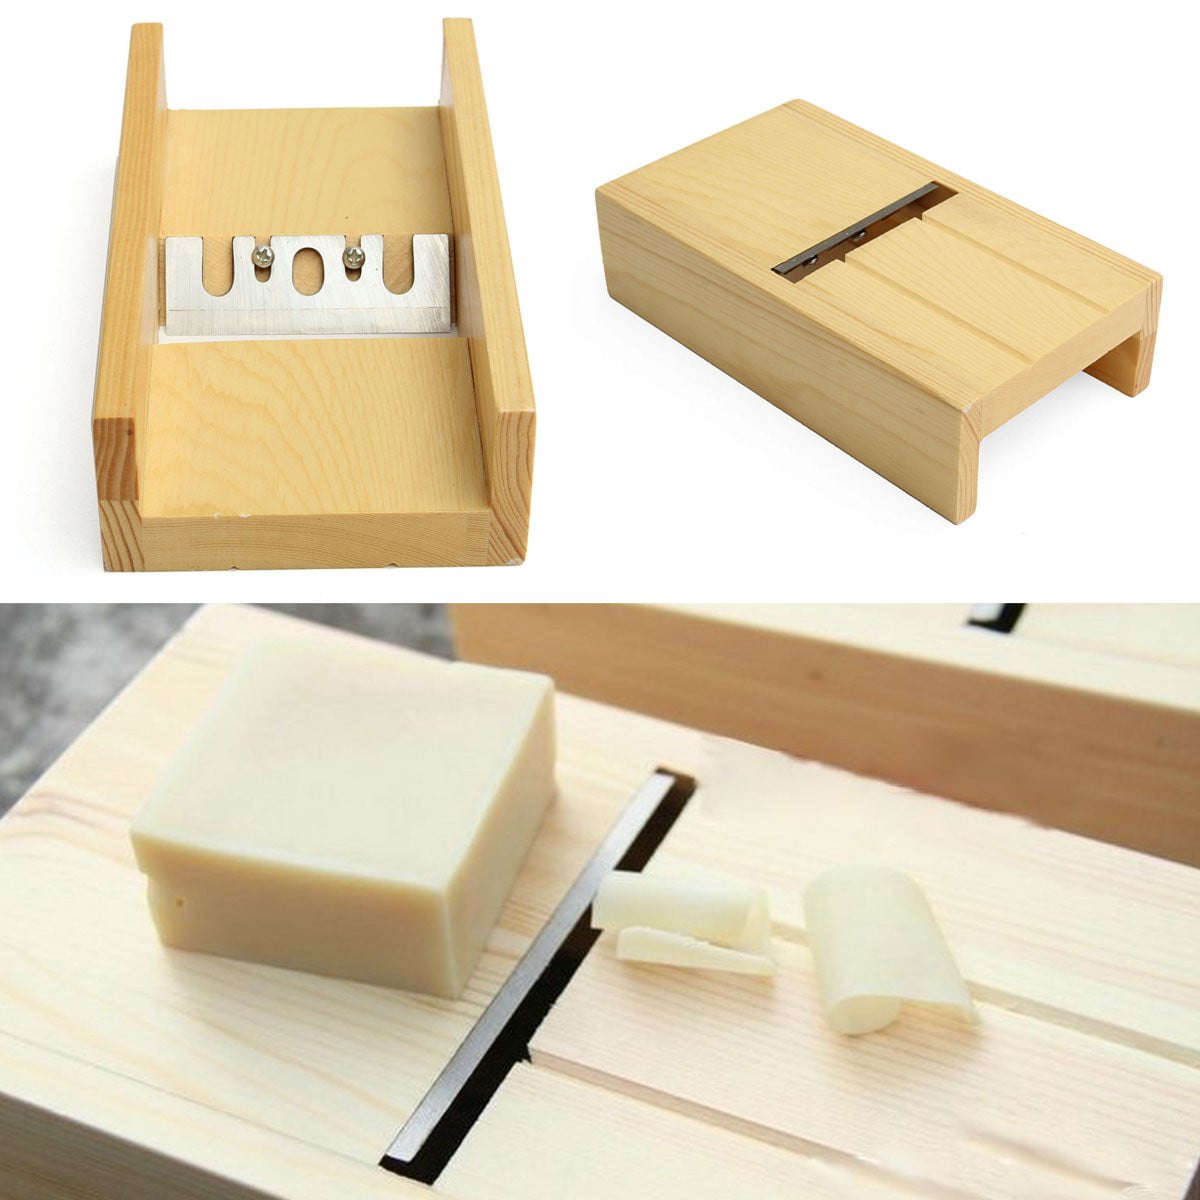 Wooden Soap Beveler Planer Sharp Blade Candle Loaf Mold Cutter Craft Making Tool 